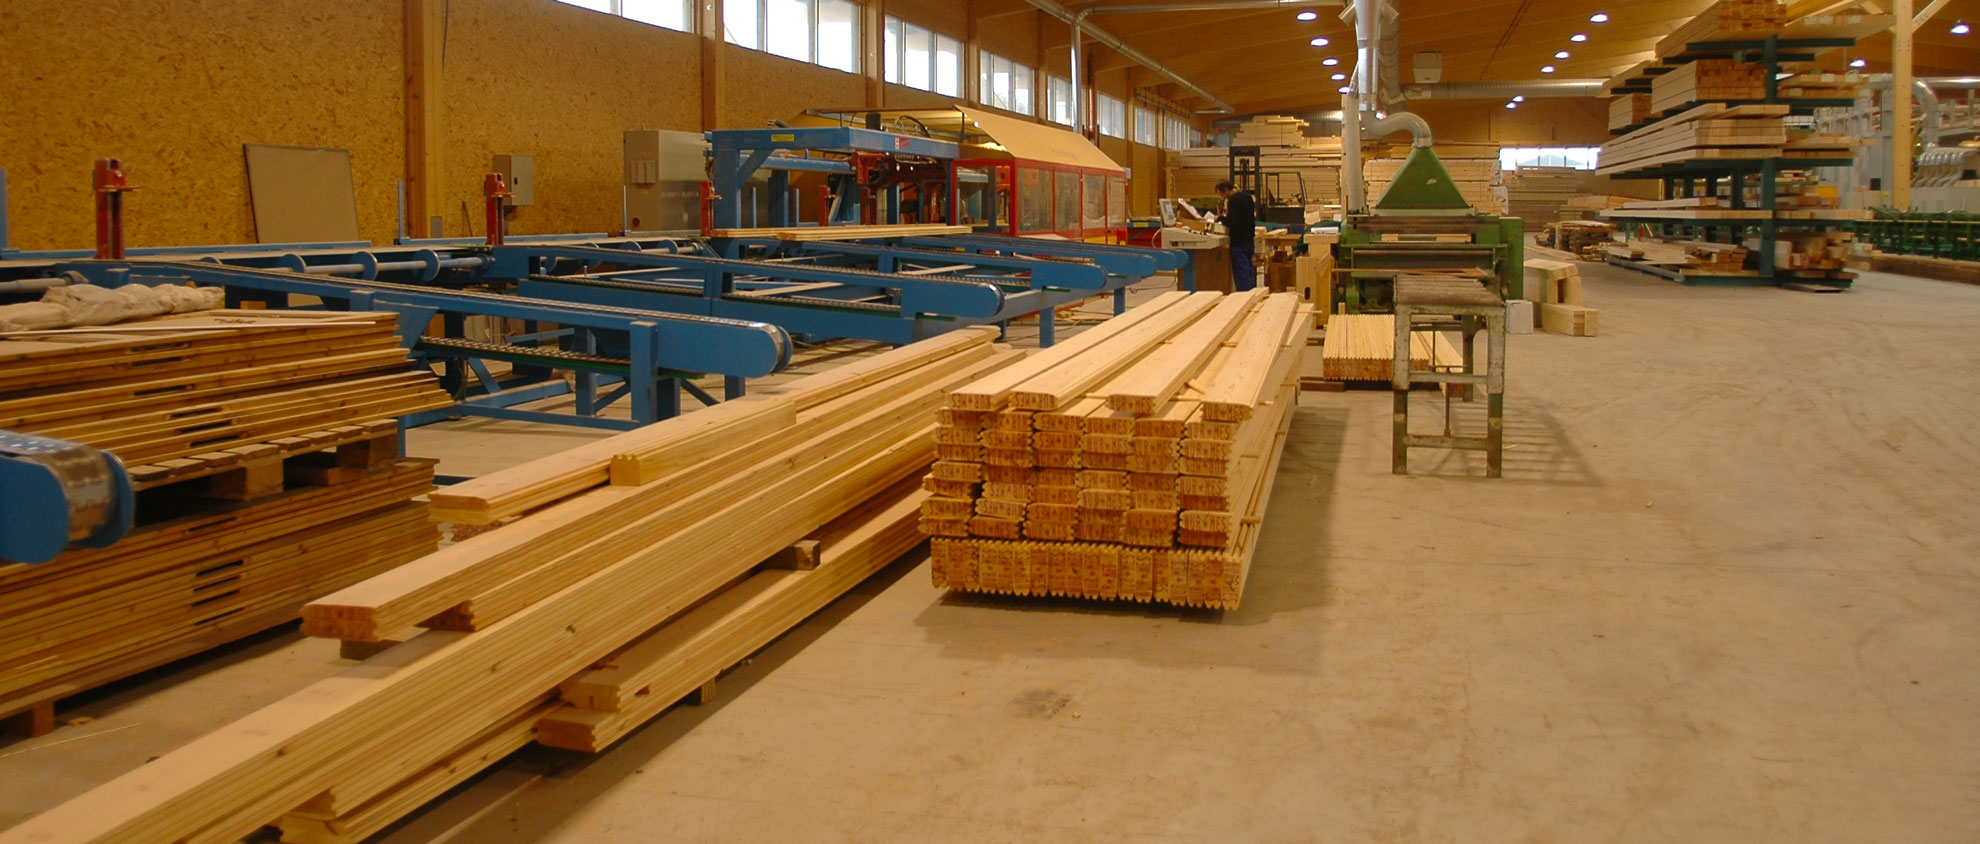 Choisir un fabricant belge de CLT collé pour sa maison en bois?